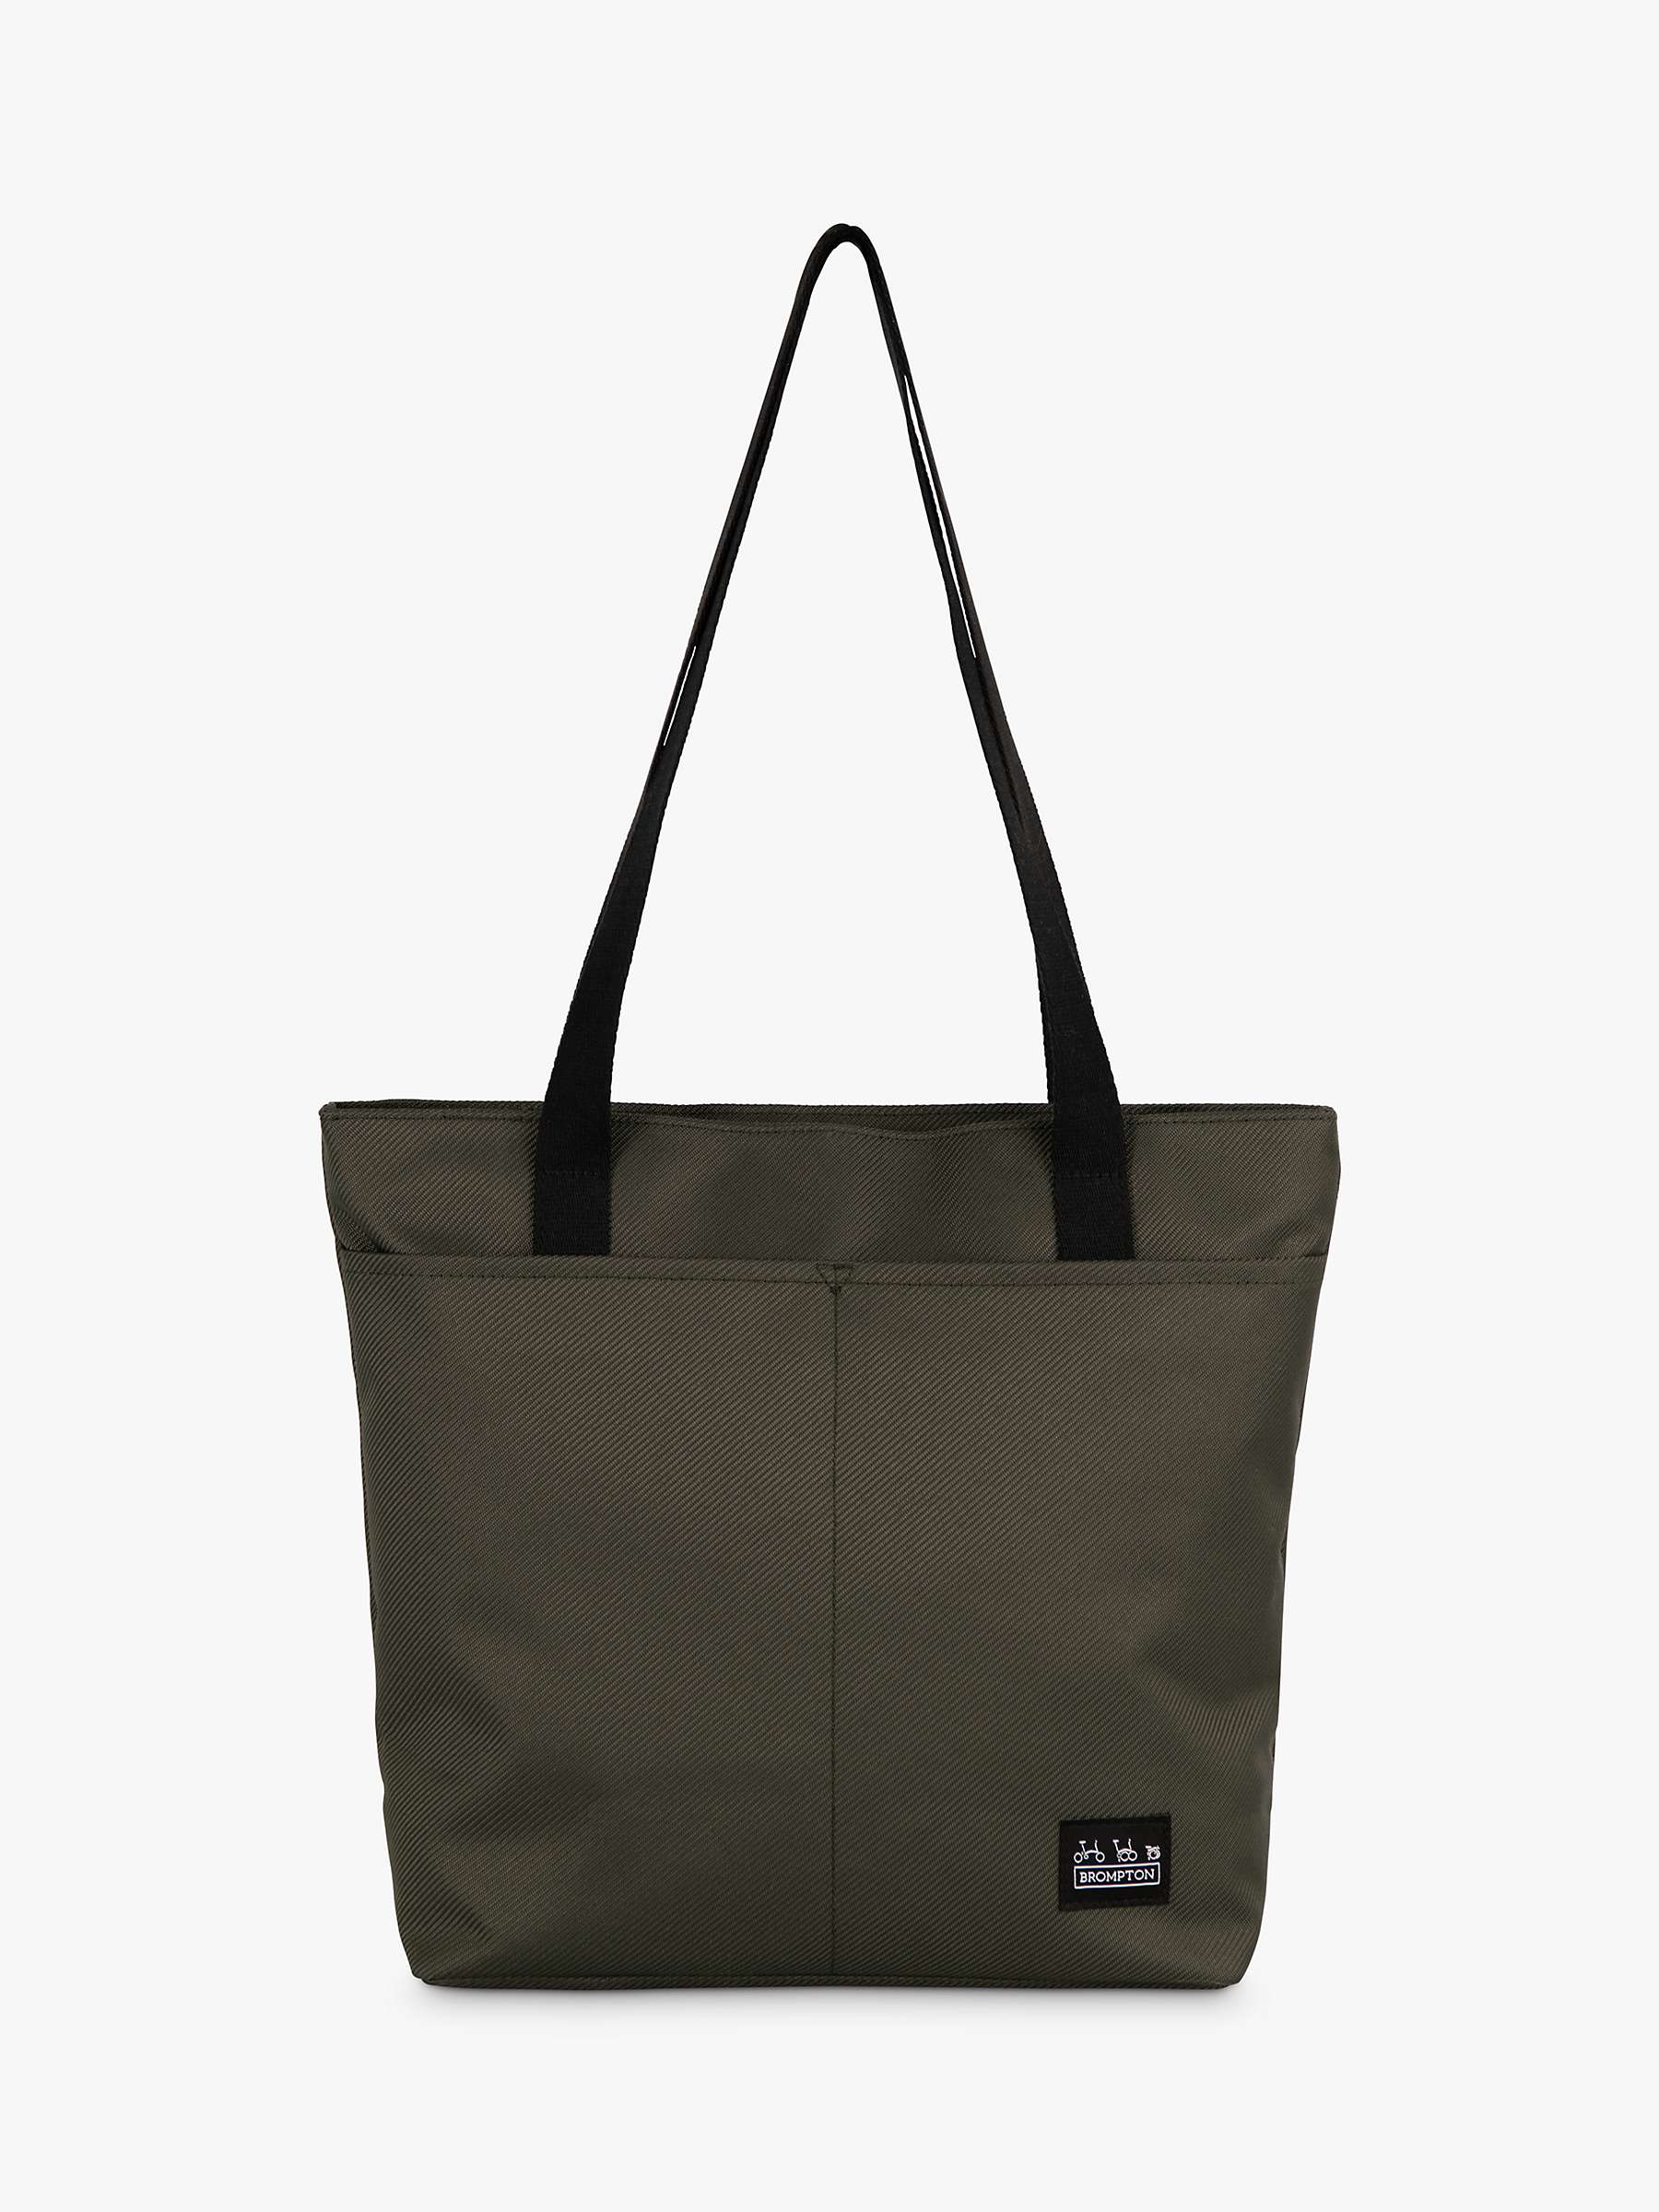 Buy Brompton Borough Tote Bag Small Online at johnlewis.com